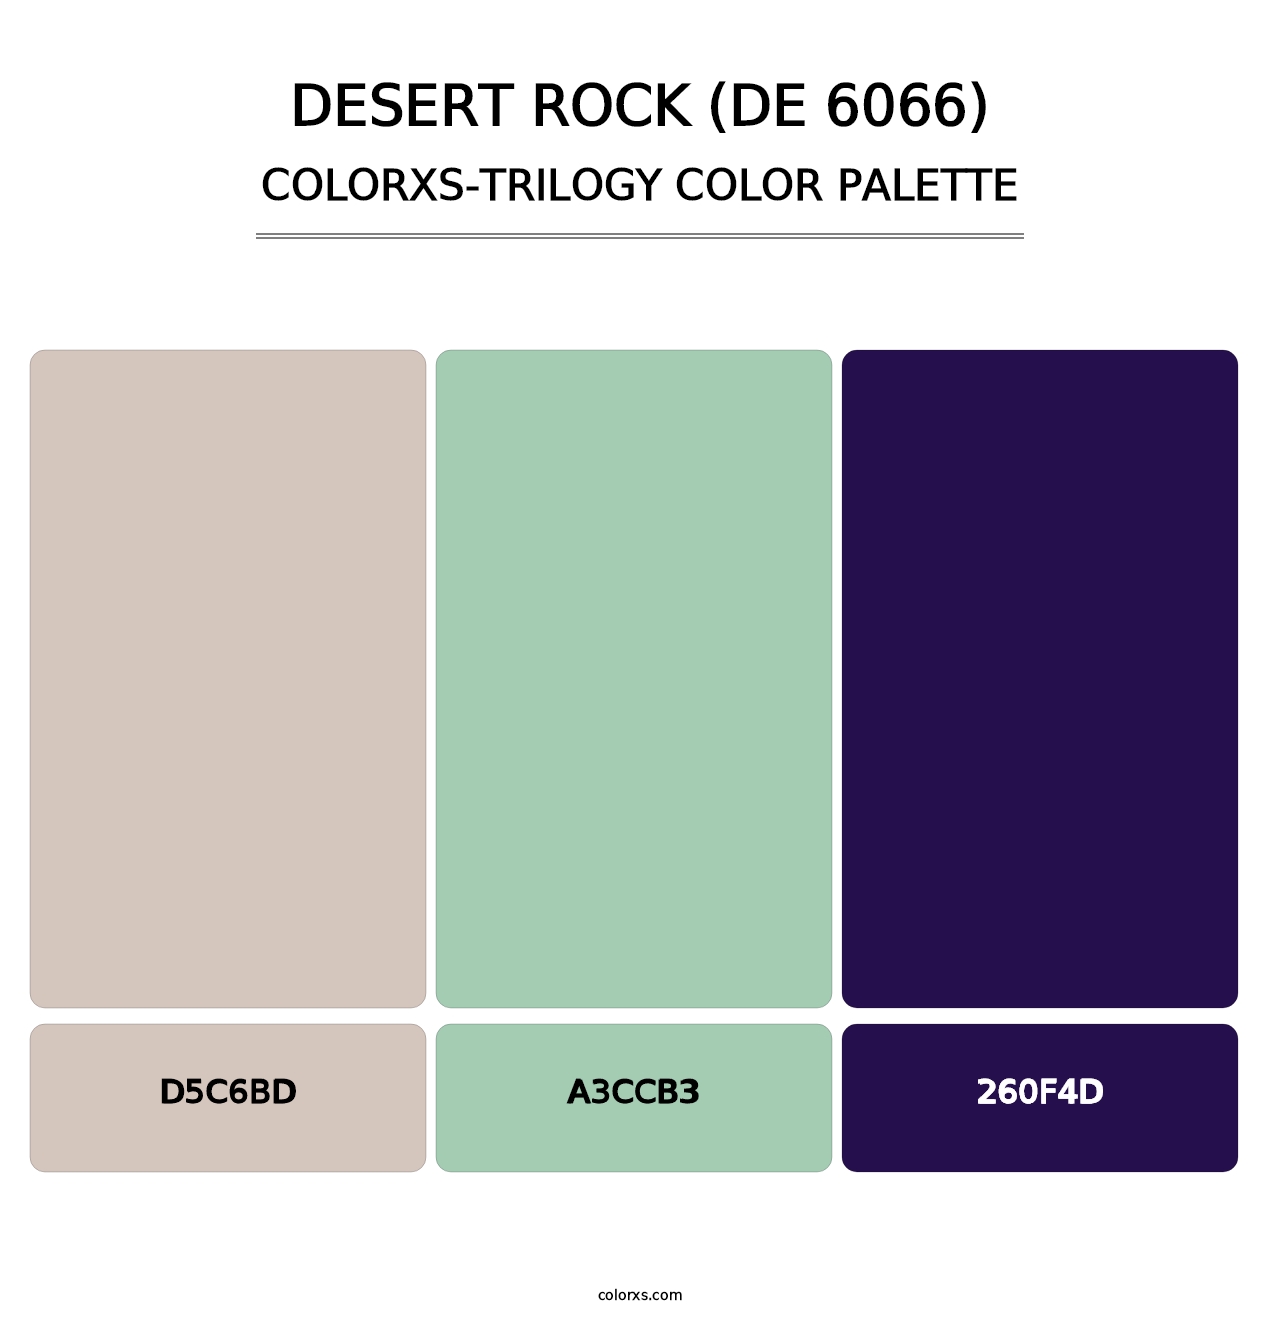 Desert Rock (DE 6066) - Colorxs Trilogy Palette